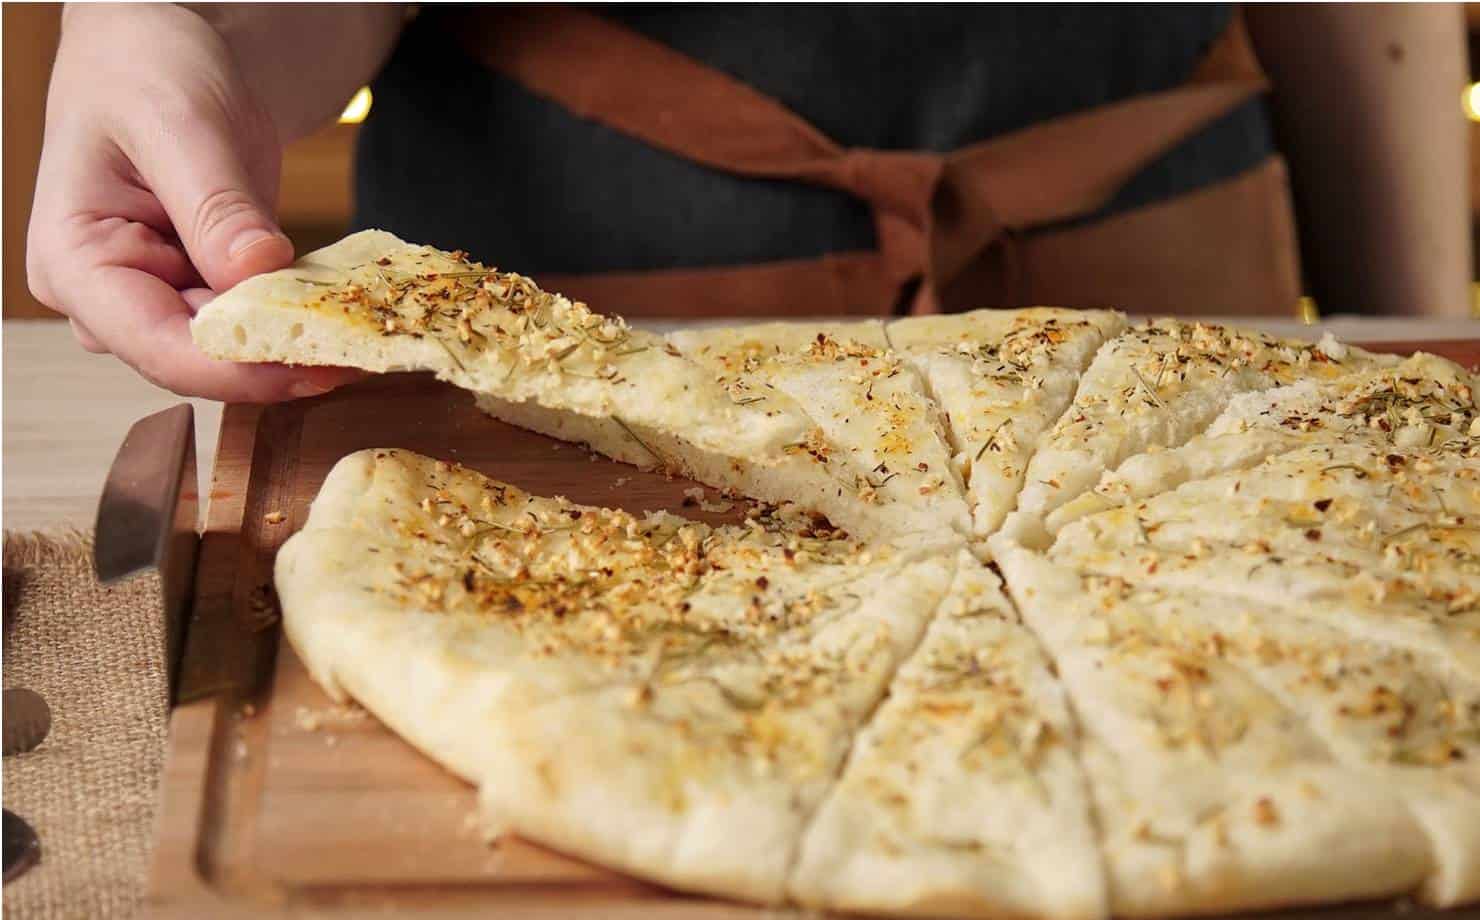 Pizza de alho: uma receita super simples e deliciosa para o jantar